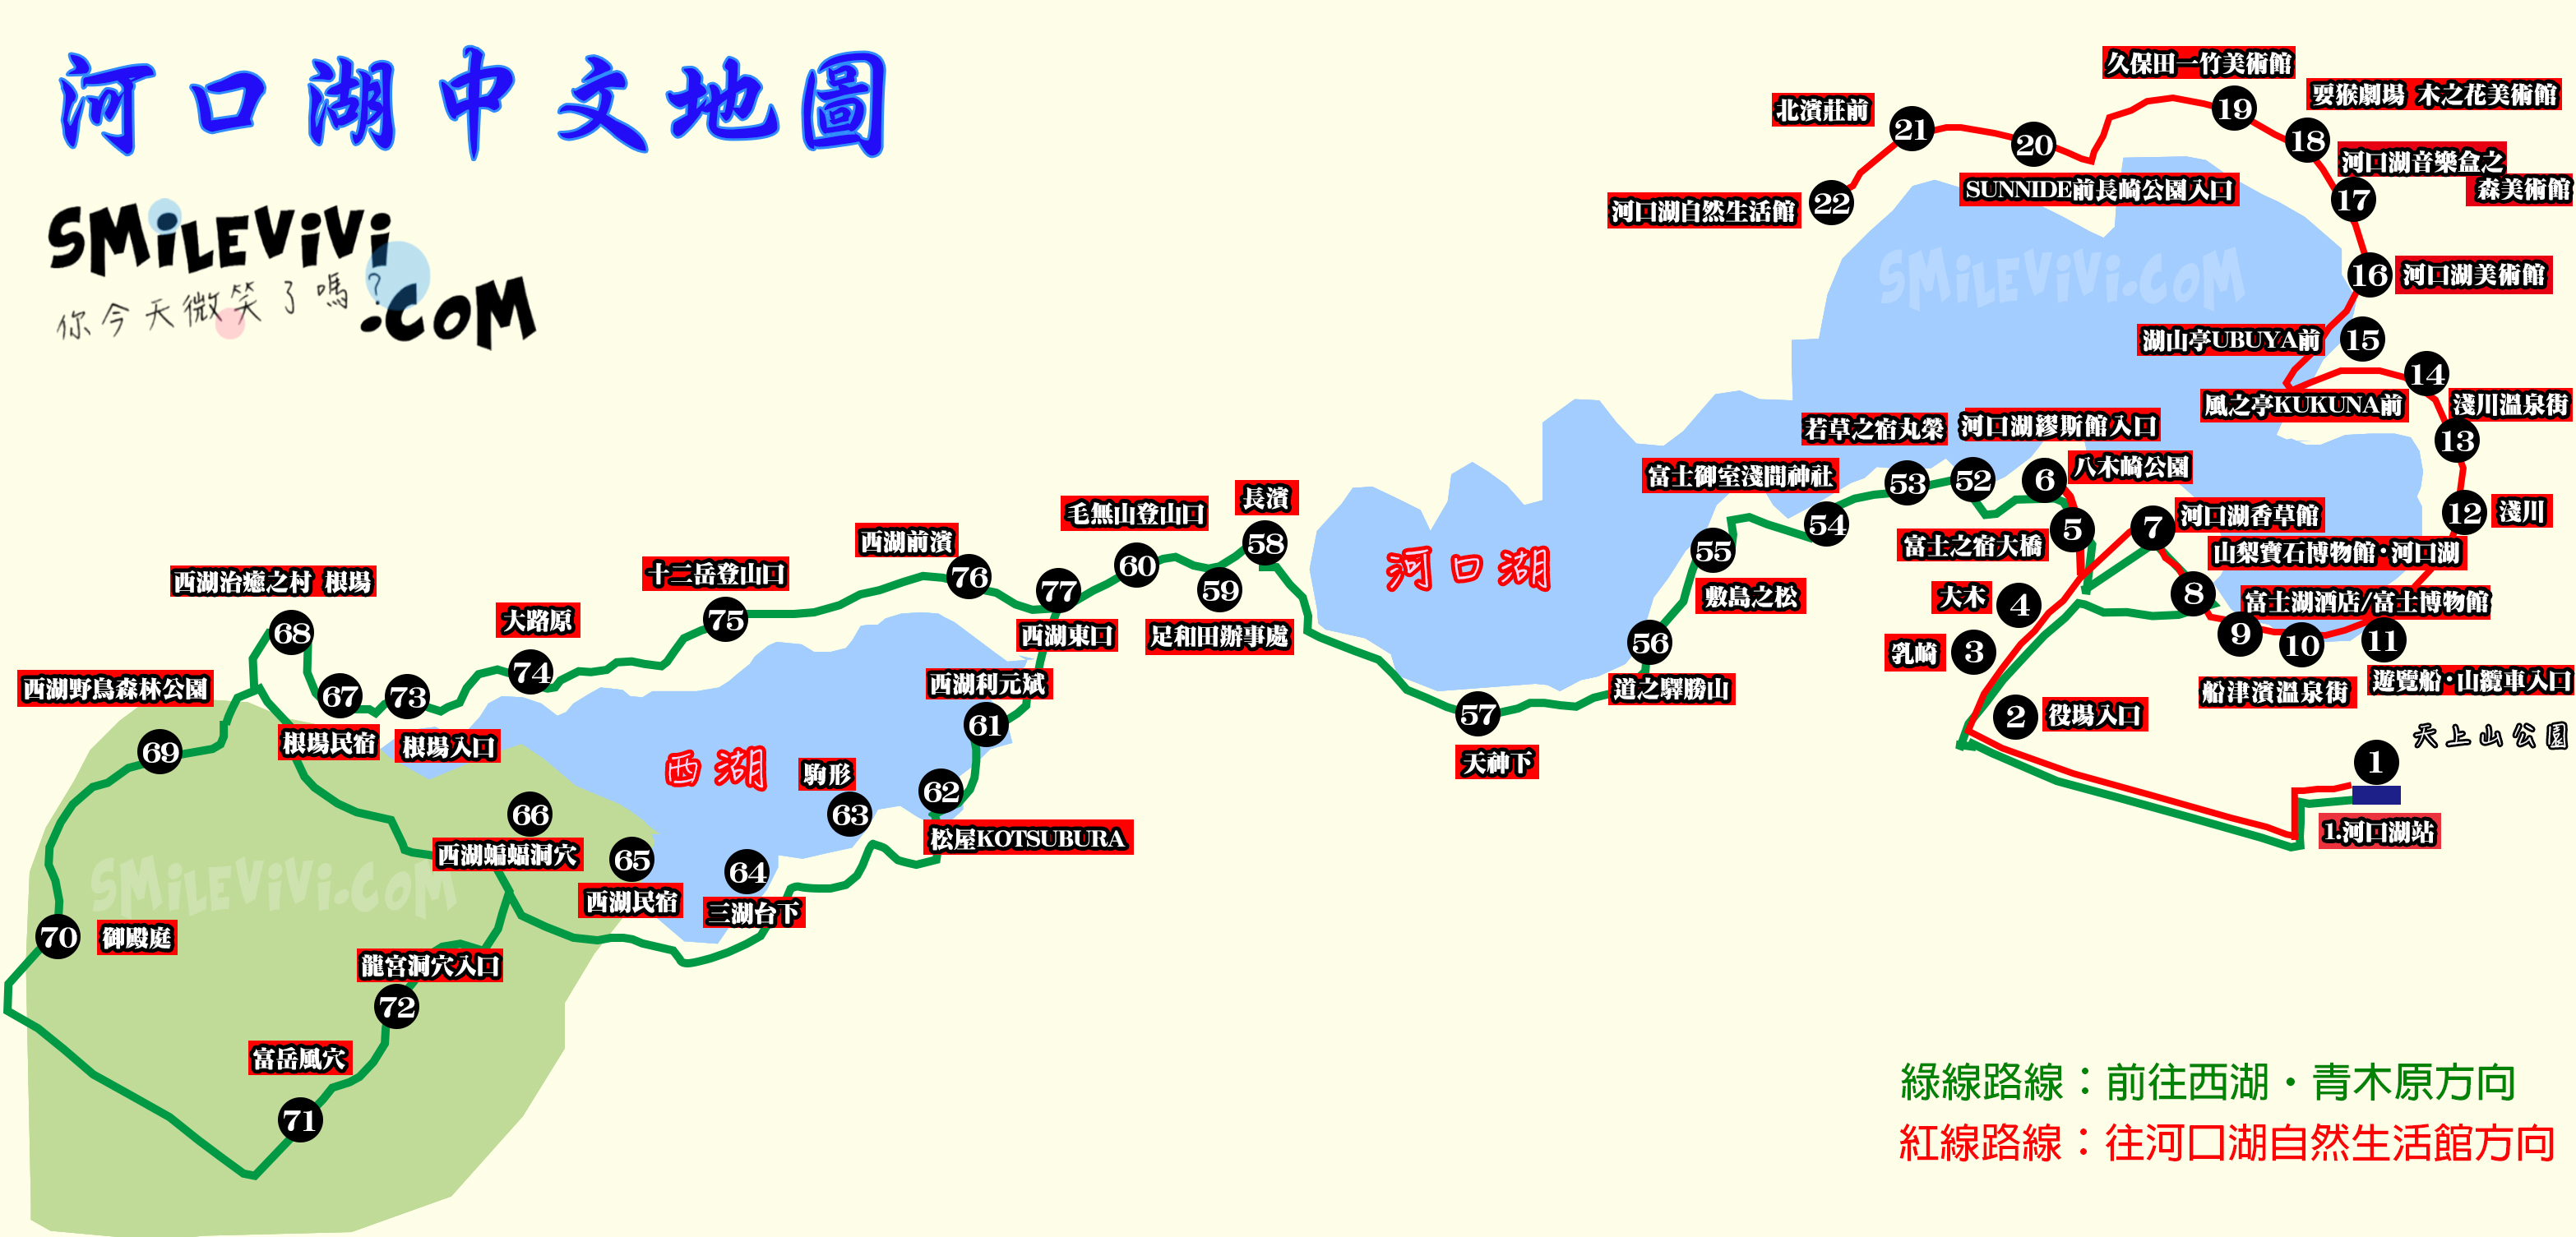 東京∥河口湖車站(河口湖駅;Kawaguchiko Station)一覽富士山美景、富士山看到飽河口湖(Kawaguchiko)巴士周遊券 9 %E6%B2%B3%E5%8F%A3%E6%B9%96%E5%9C%B0%E5%9C%96